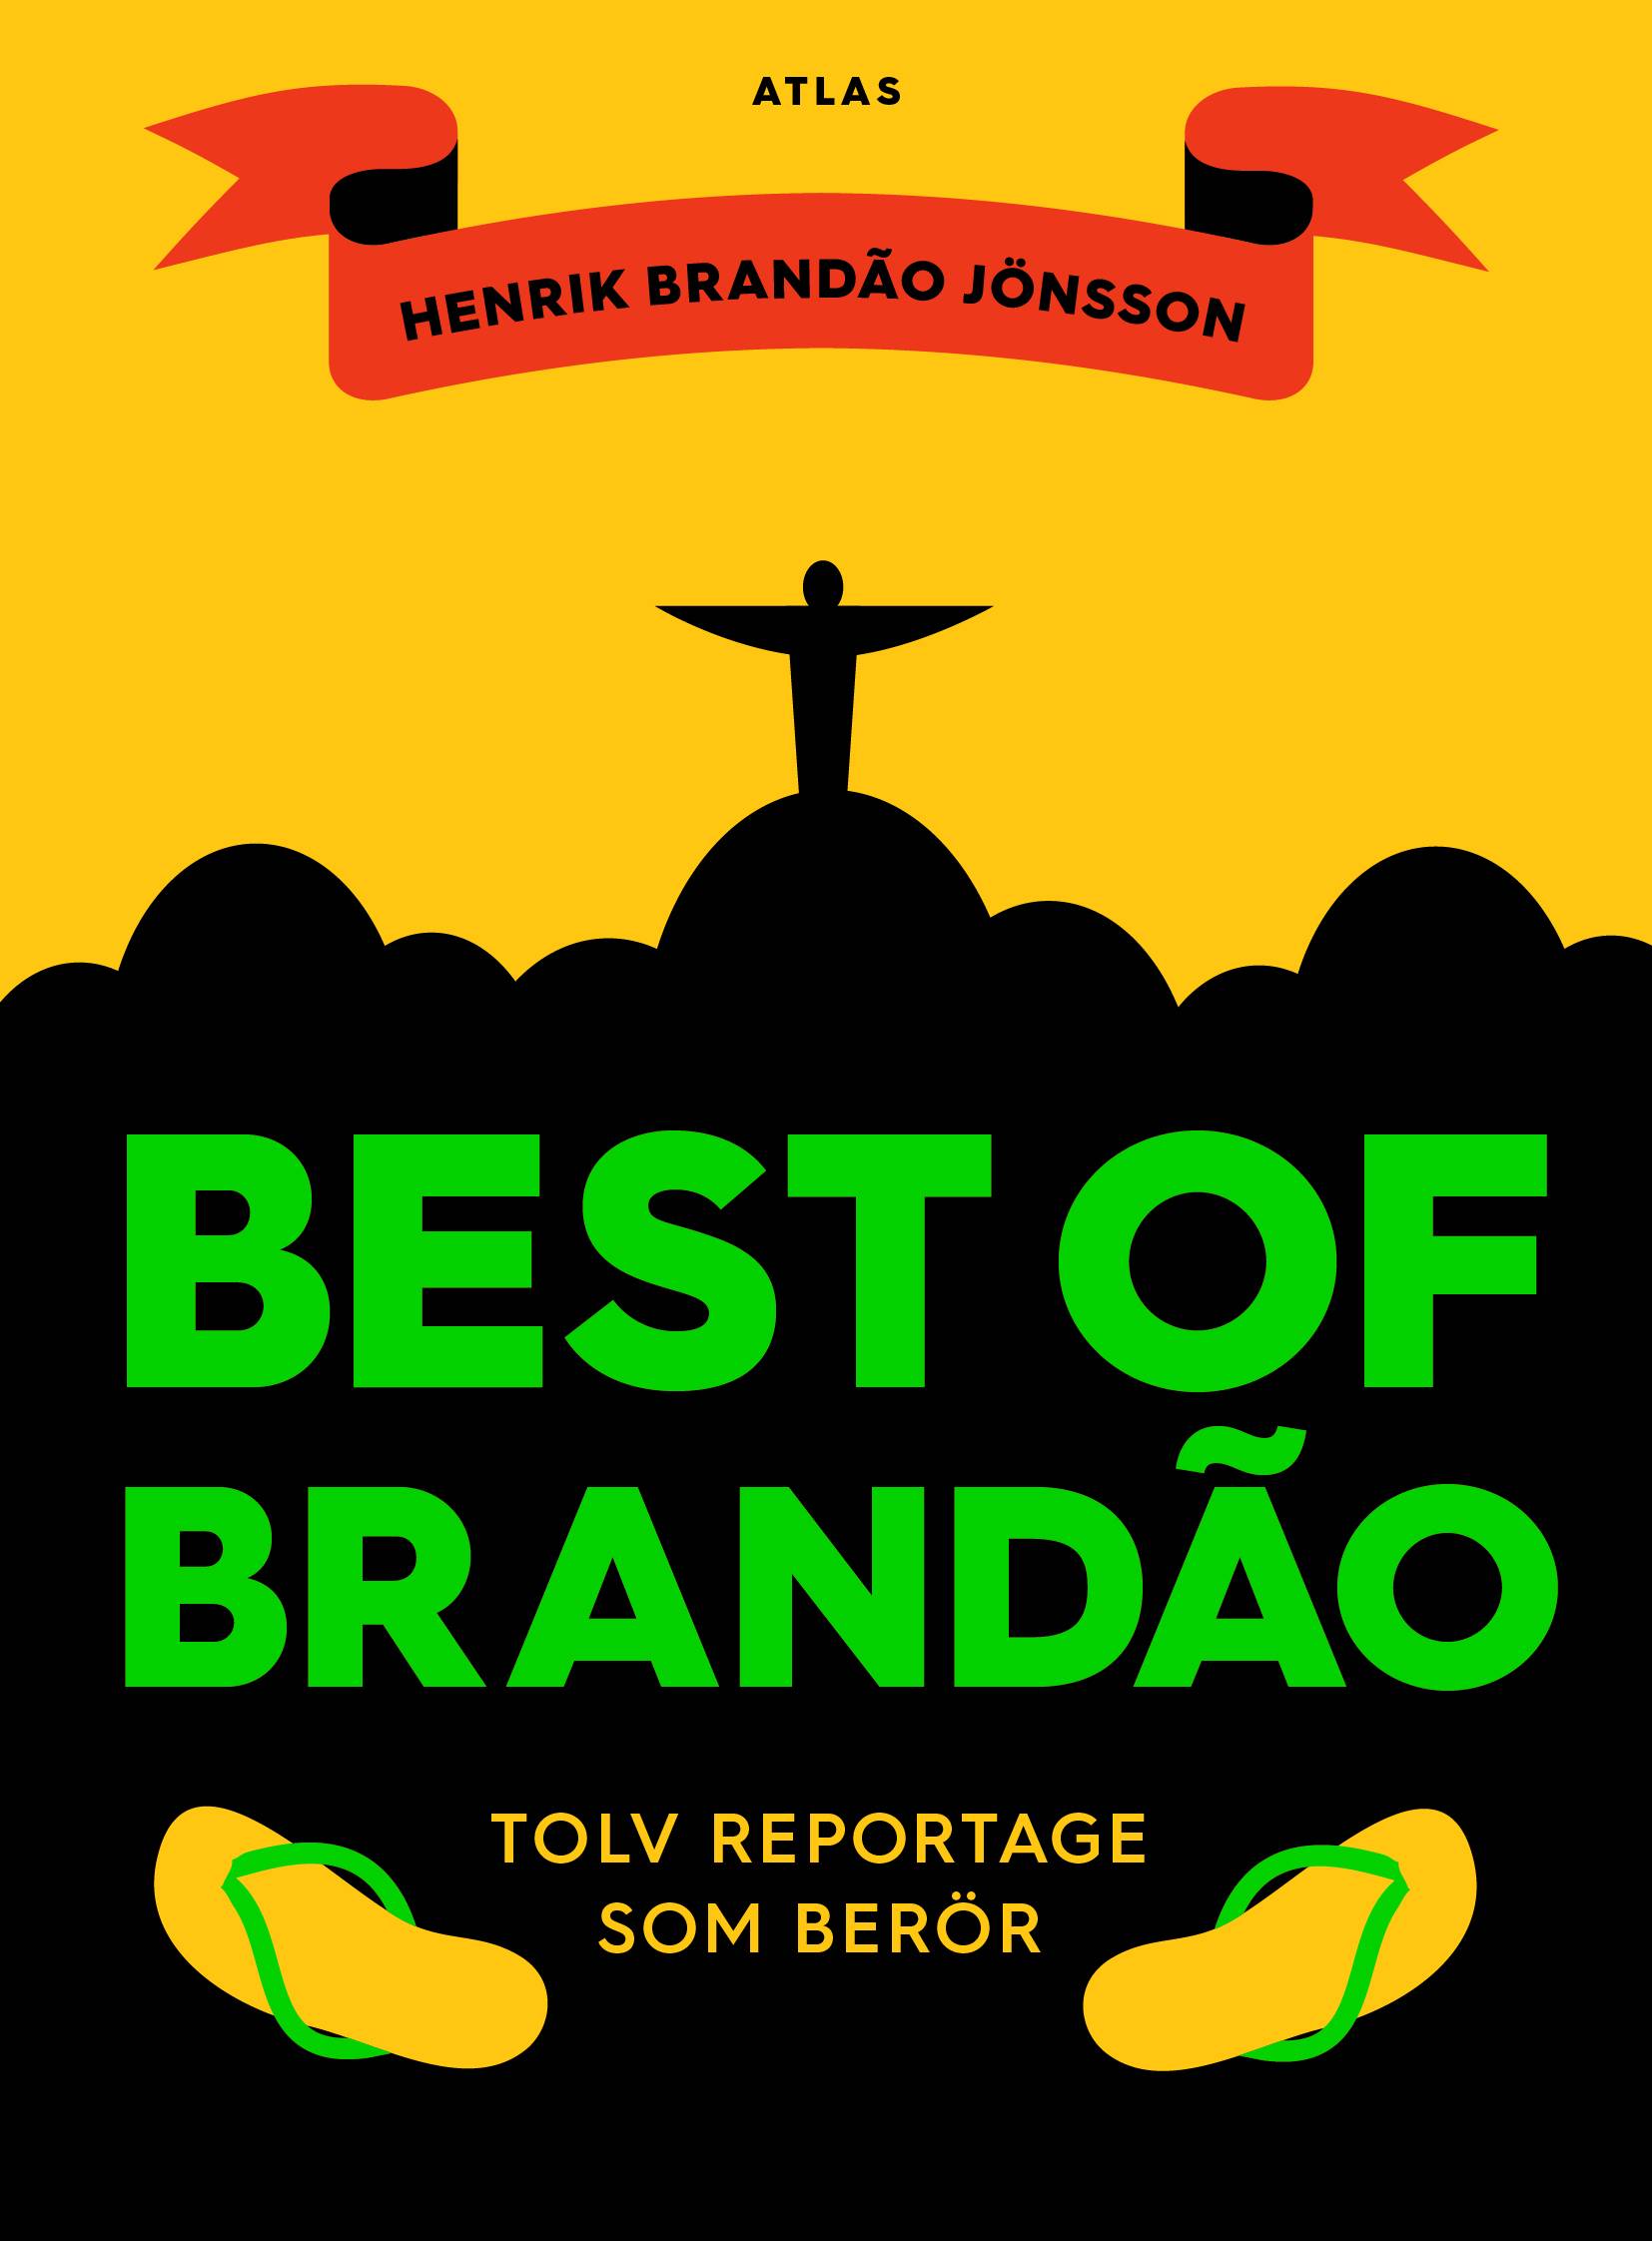 Best of Brandao : tolv reportage som berör